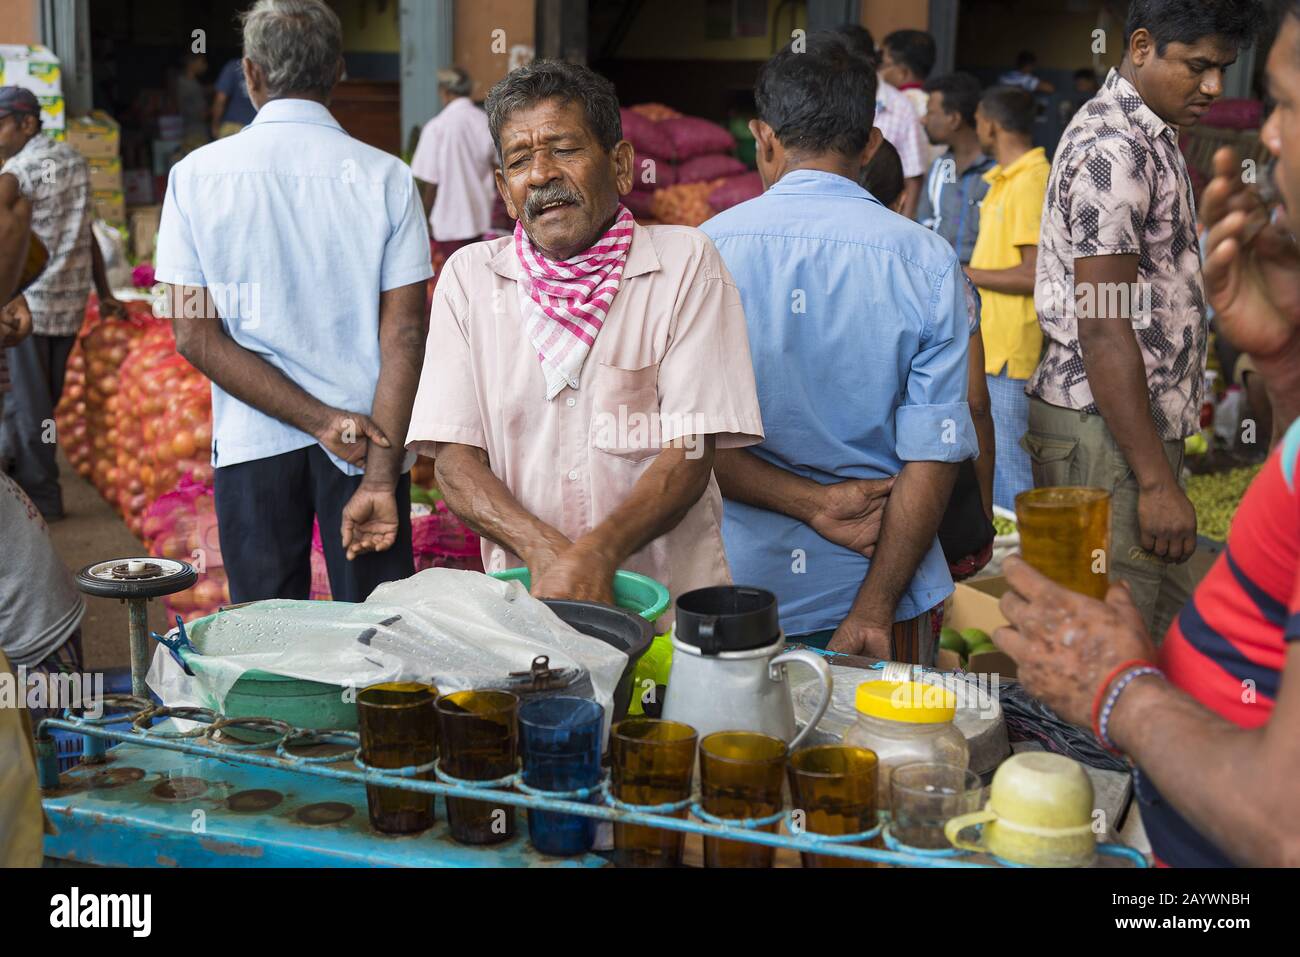 Dambulla, Sri Lanka: 18.03.2019: Im Obst- und Gemüsemarkt. Männer, die Erfrischungen, Tee und Kaffee verkaufen. Stockfoto